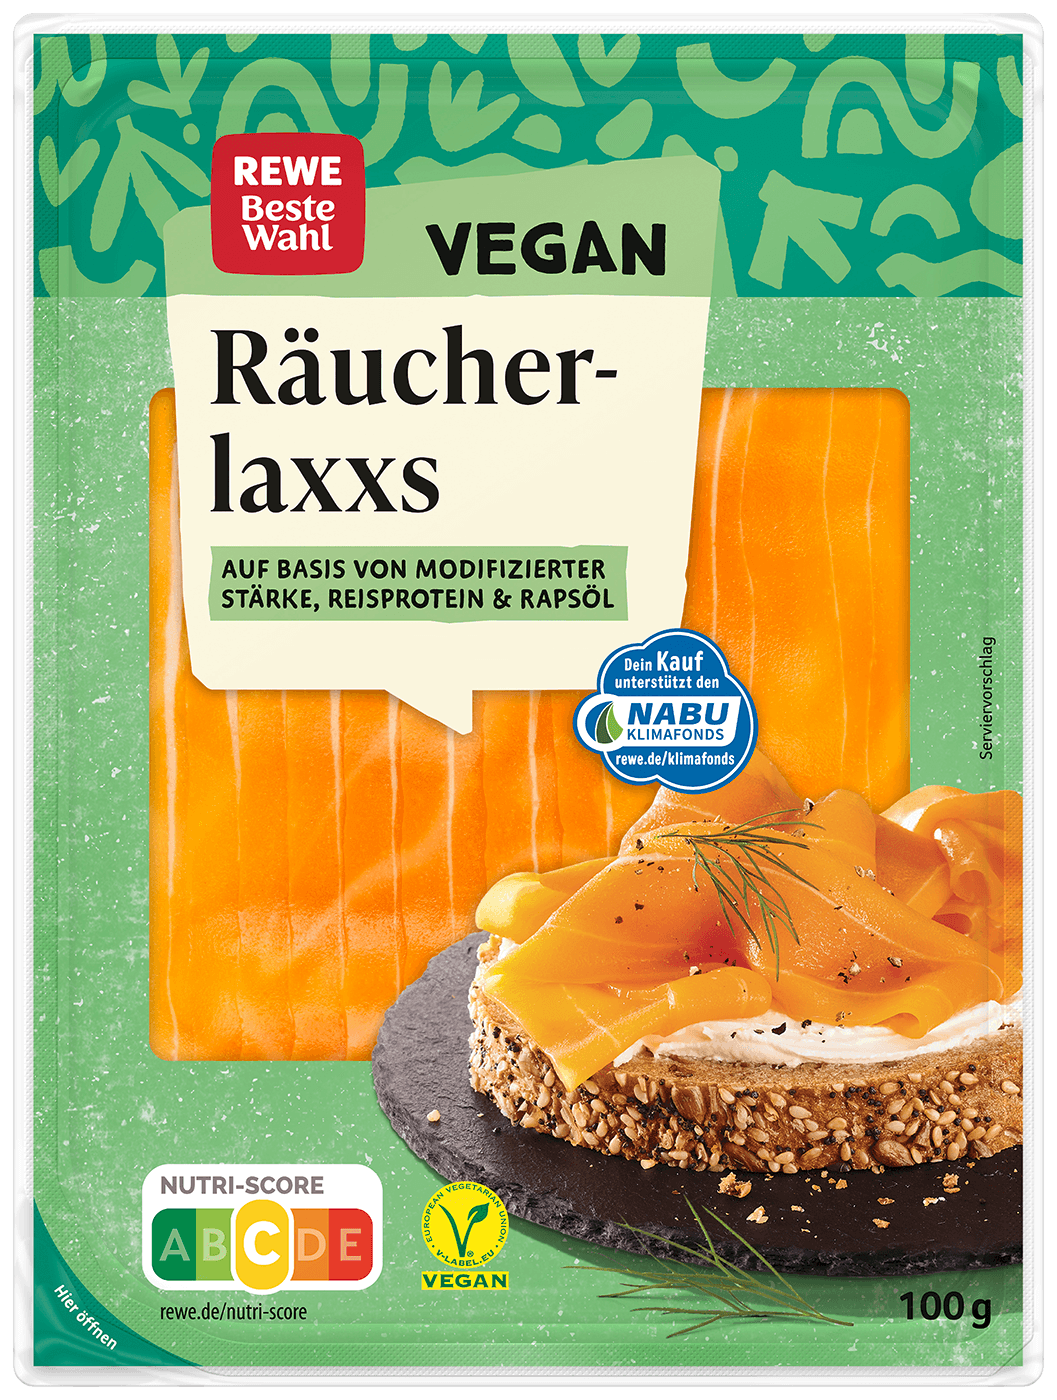 REWE Beste Wahl Veganer Räucherlaxxs